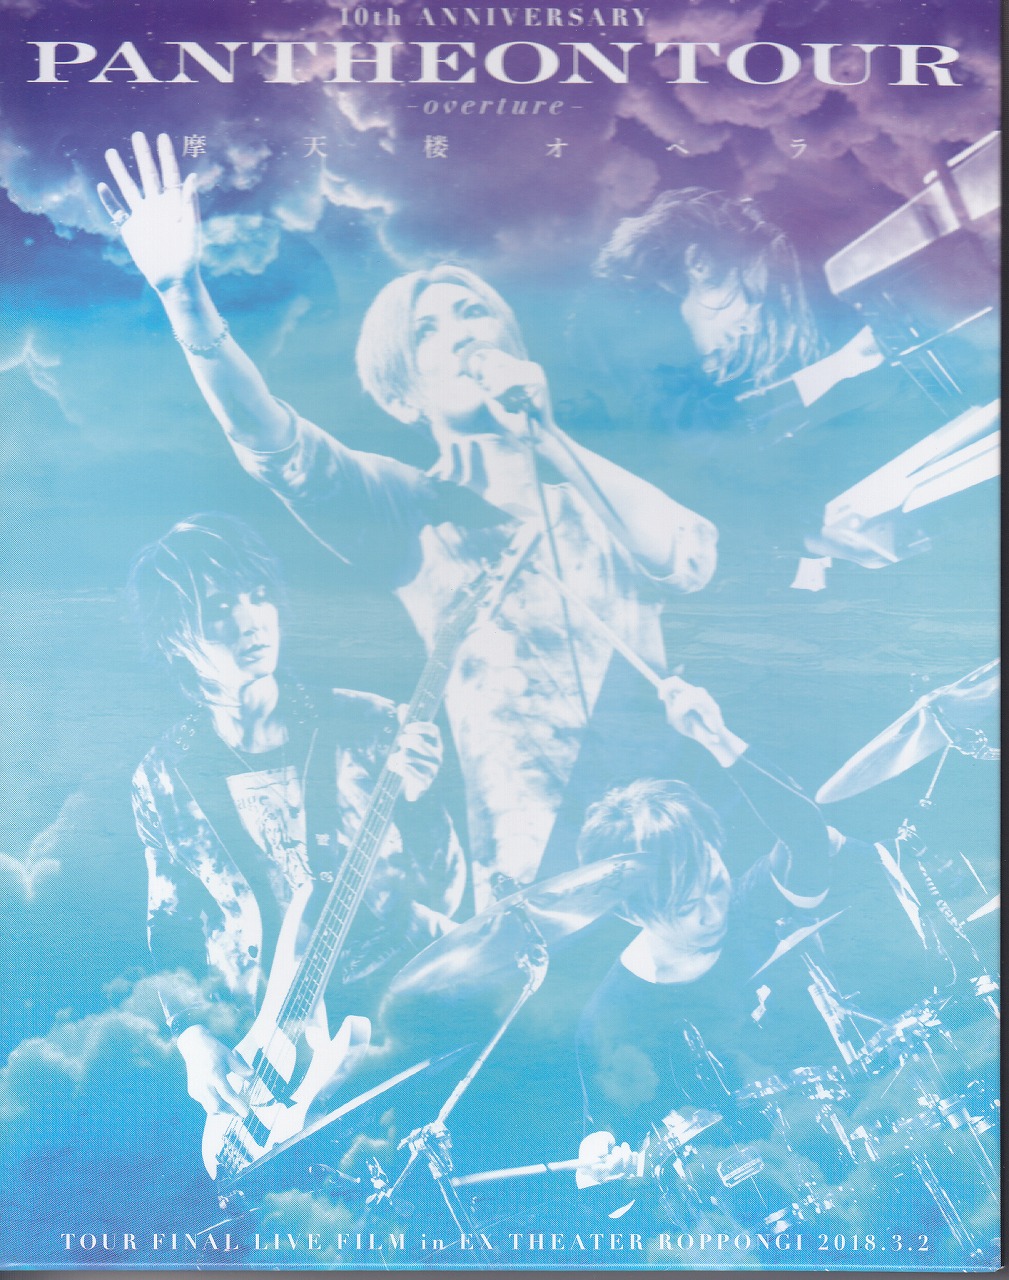 摩天楼オペラ ( マテンロウオペラ )  の DVD 10th ANNIVERSARY「PANTHEON TOUR -overture-」TOUR FINAL LIVE FILM in EX THEATER ROPPONGI 2018.3.2